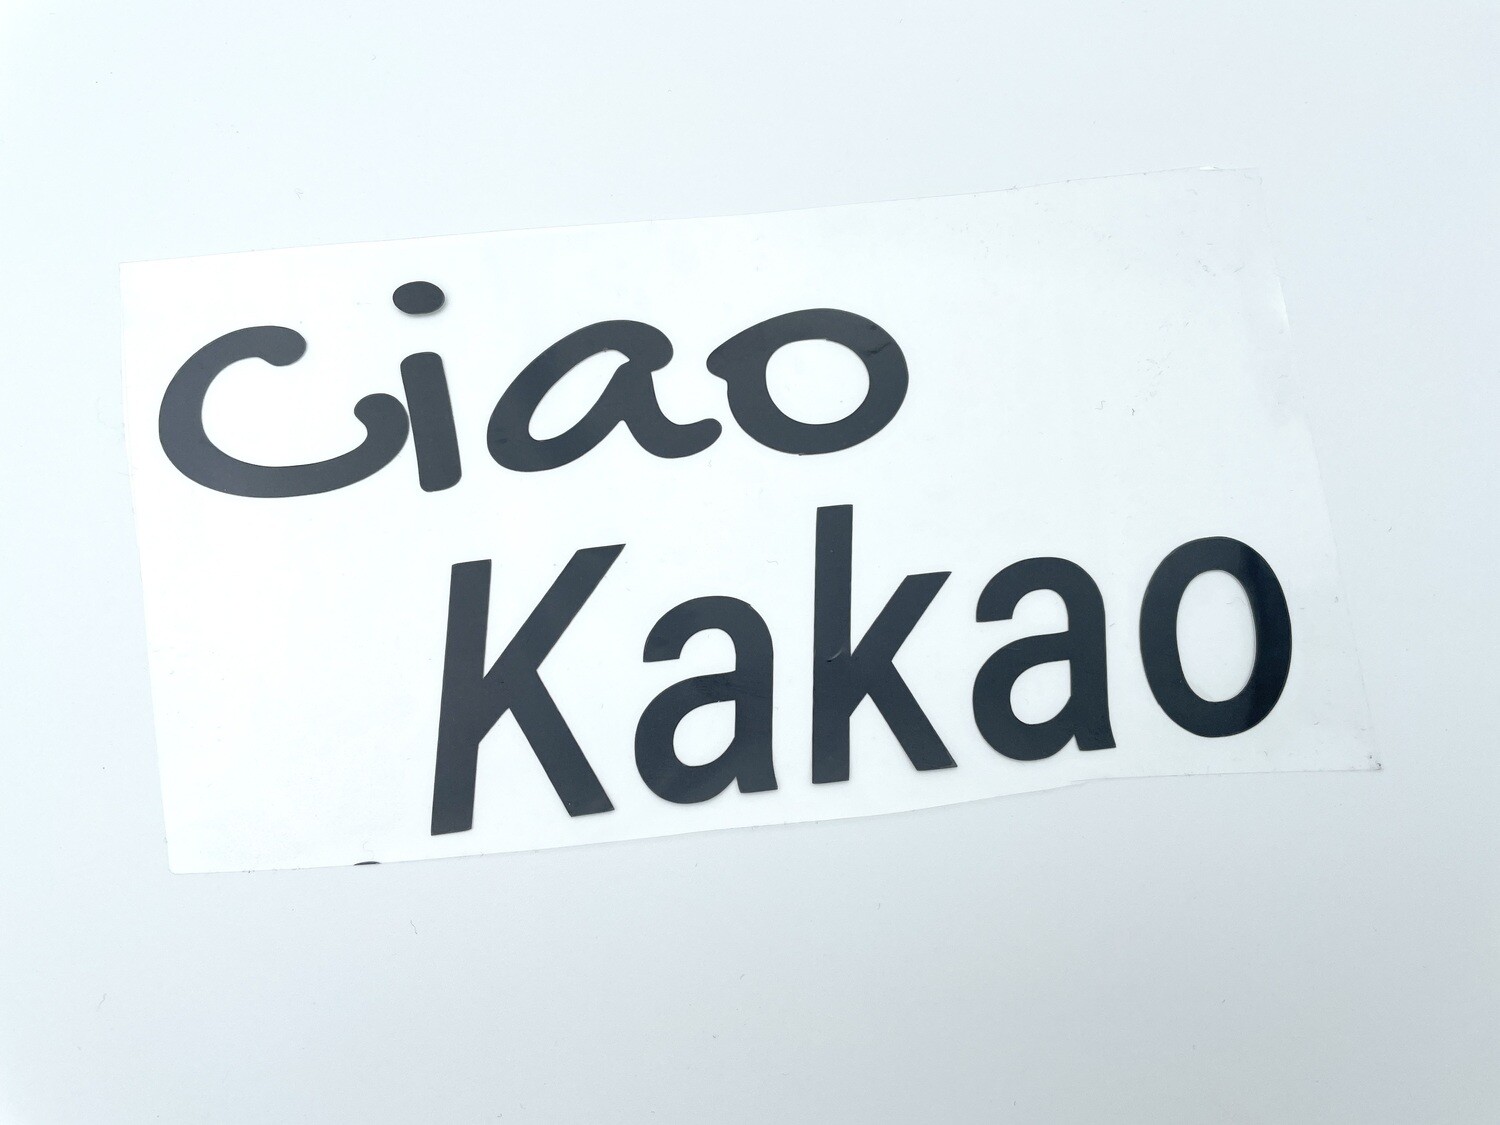 Statement Plot "Ciao Kakao" Schwarz